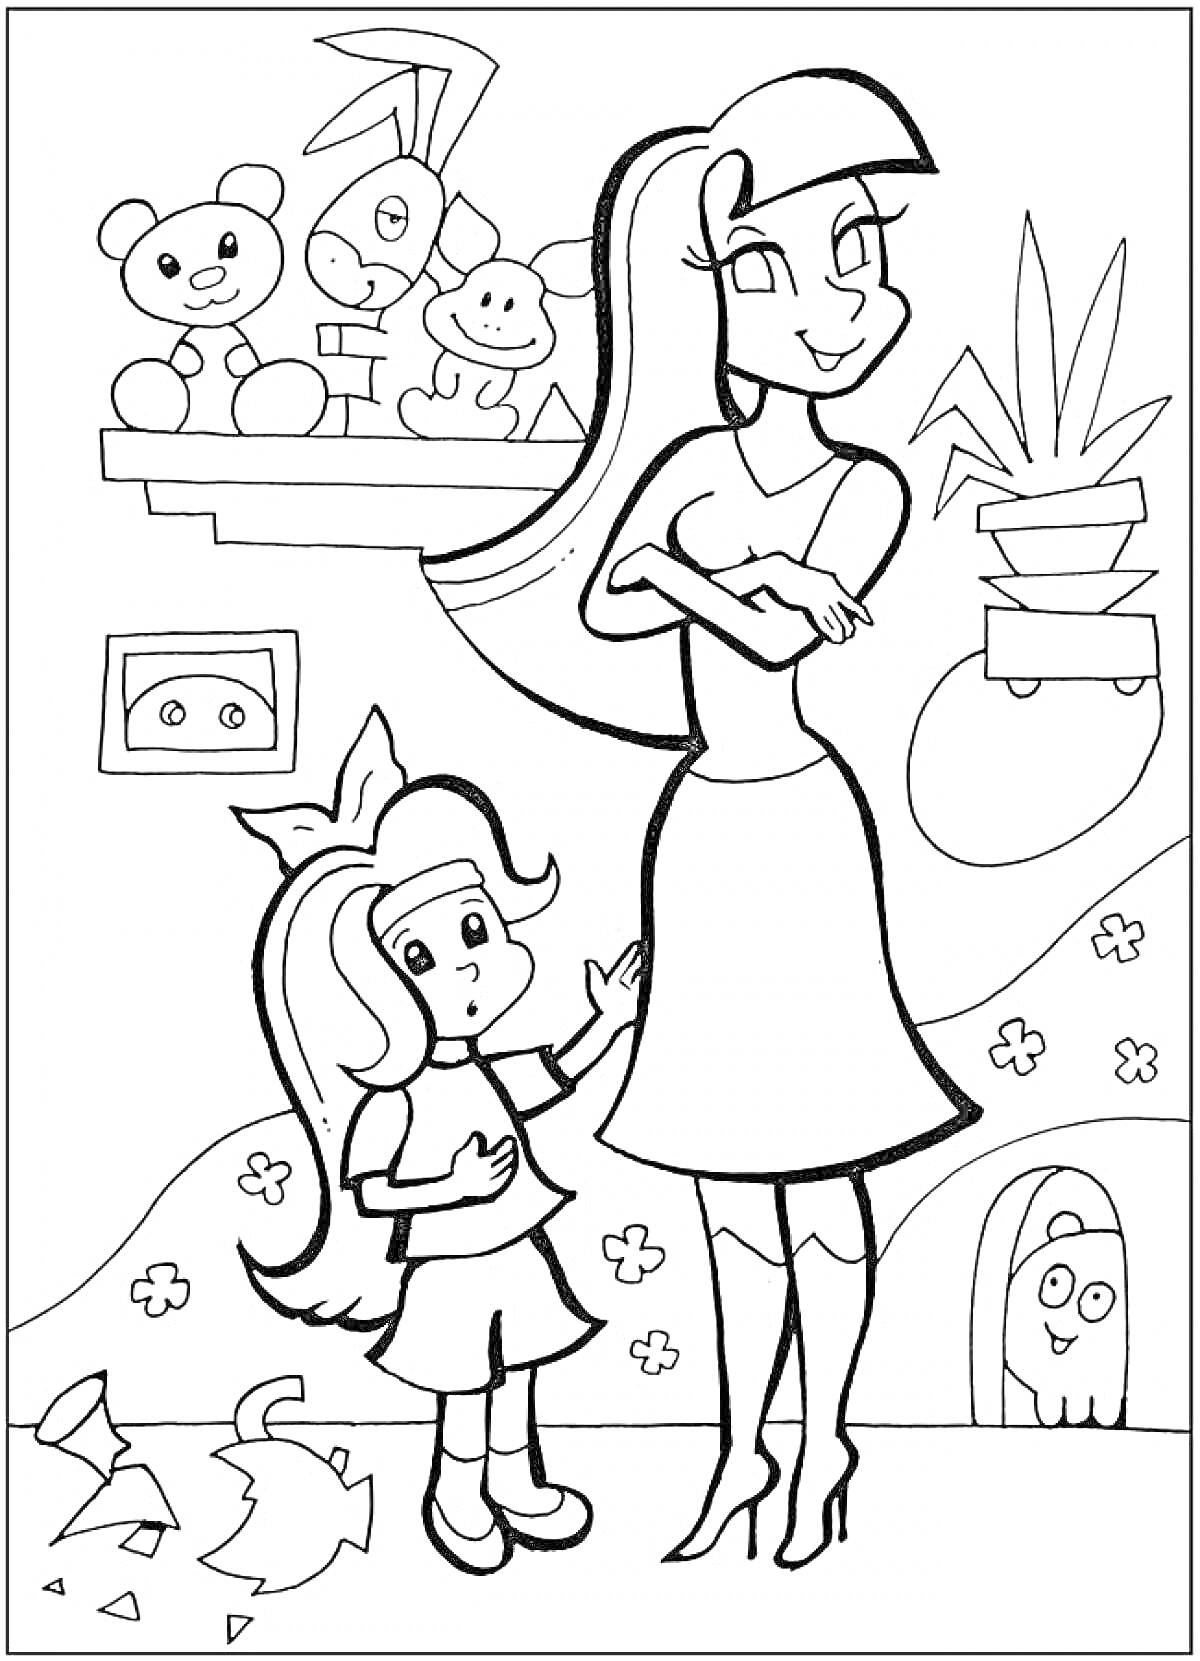 Раскраска Мама и дочка в комнате с игрушками, горшком с растением на полке, рамкой на стене, цветами на обоях, горами за окном и разбитыми горшками на полу